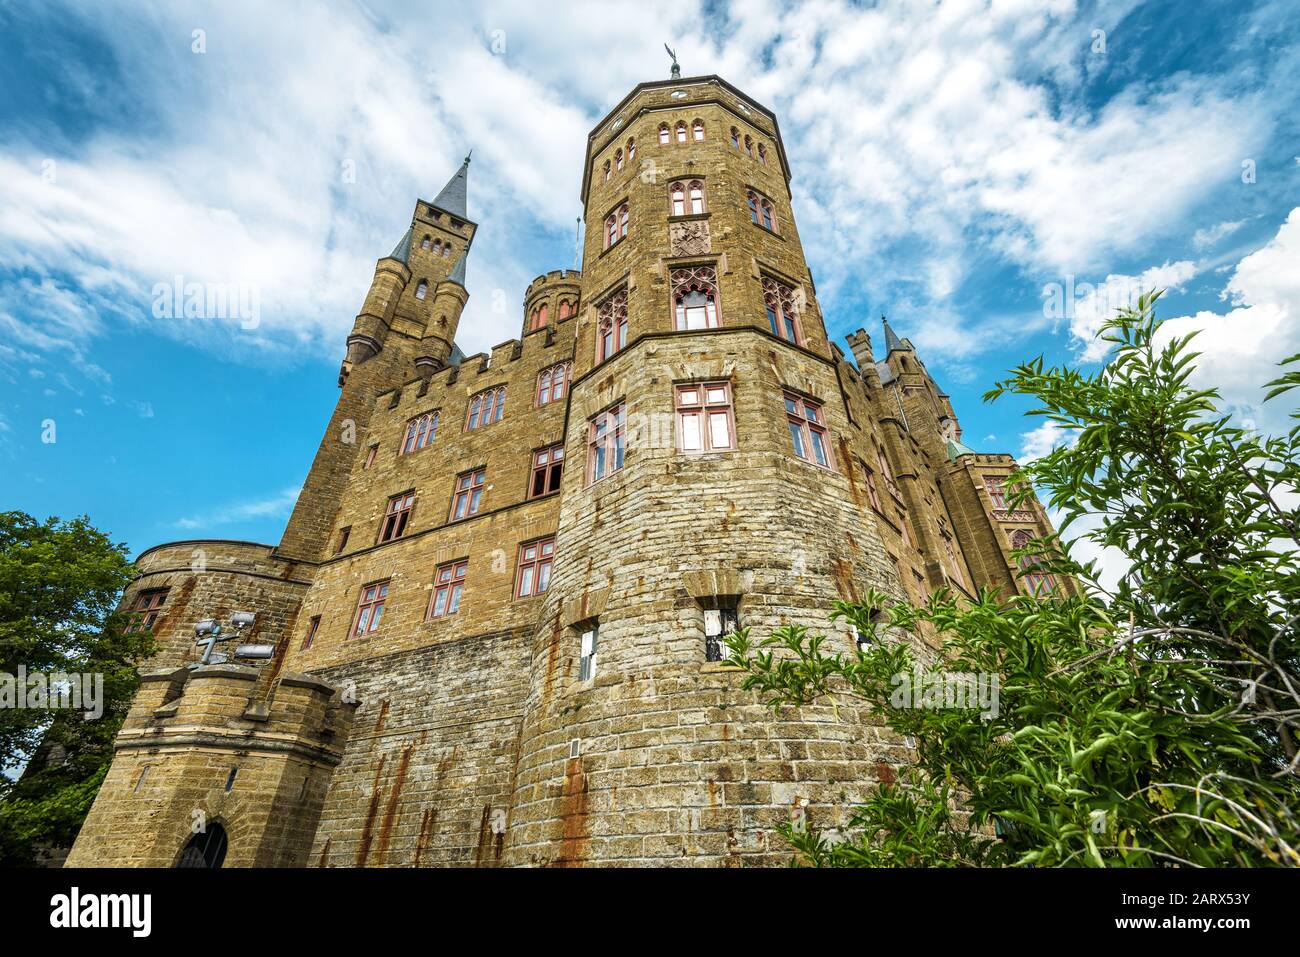 Castello Hohenzollern primo piano, Germania. Questo castello è un punto di riferimento nelle vicinanze di Stoccarda. Vista dal basso delle imponenti torri Hohenzollern in estate. Foto Stock